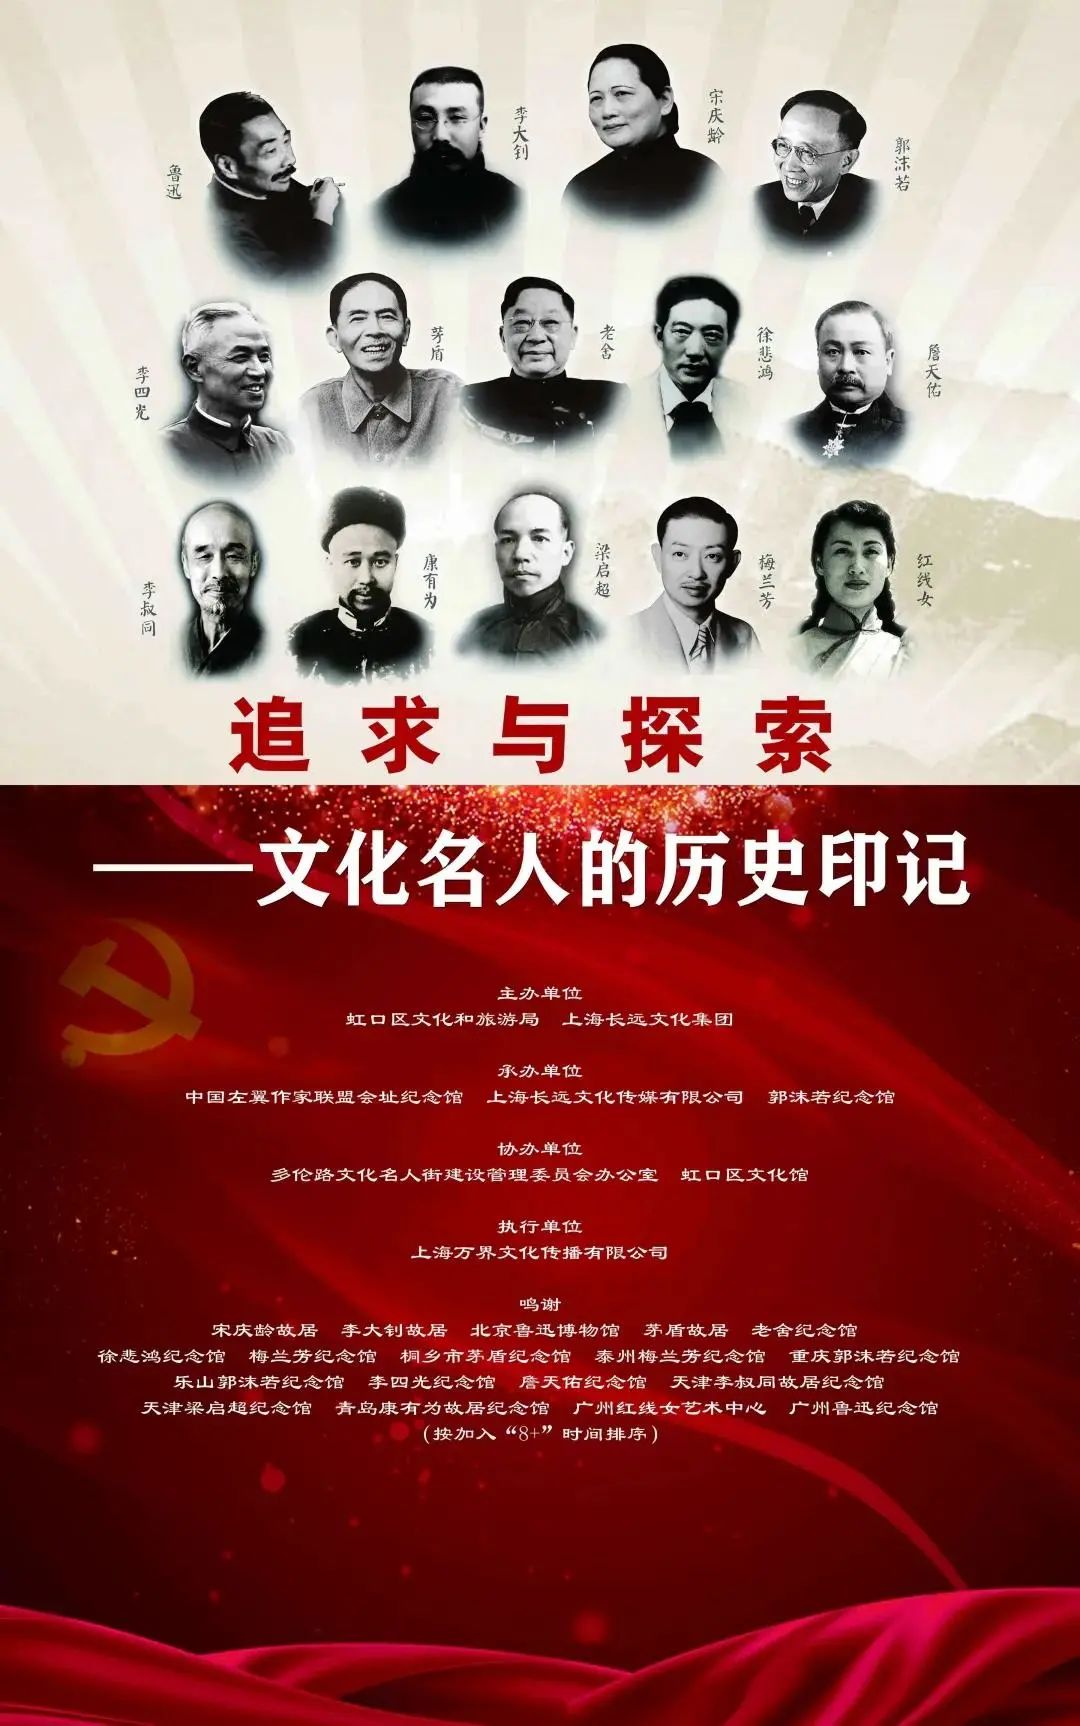 党史学习教育这场展览中介绍的人物推动了中国历史的进步和发展